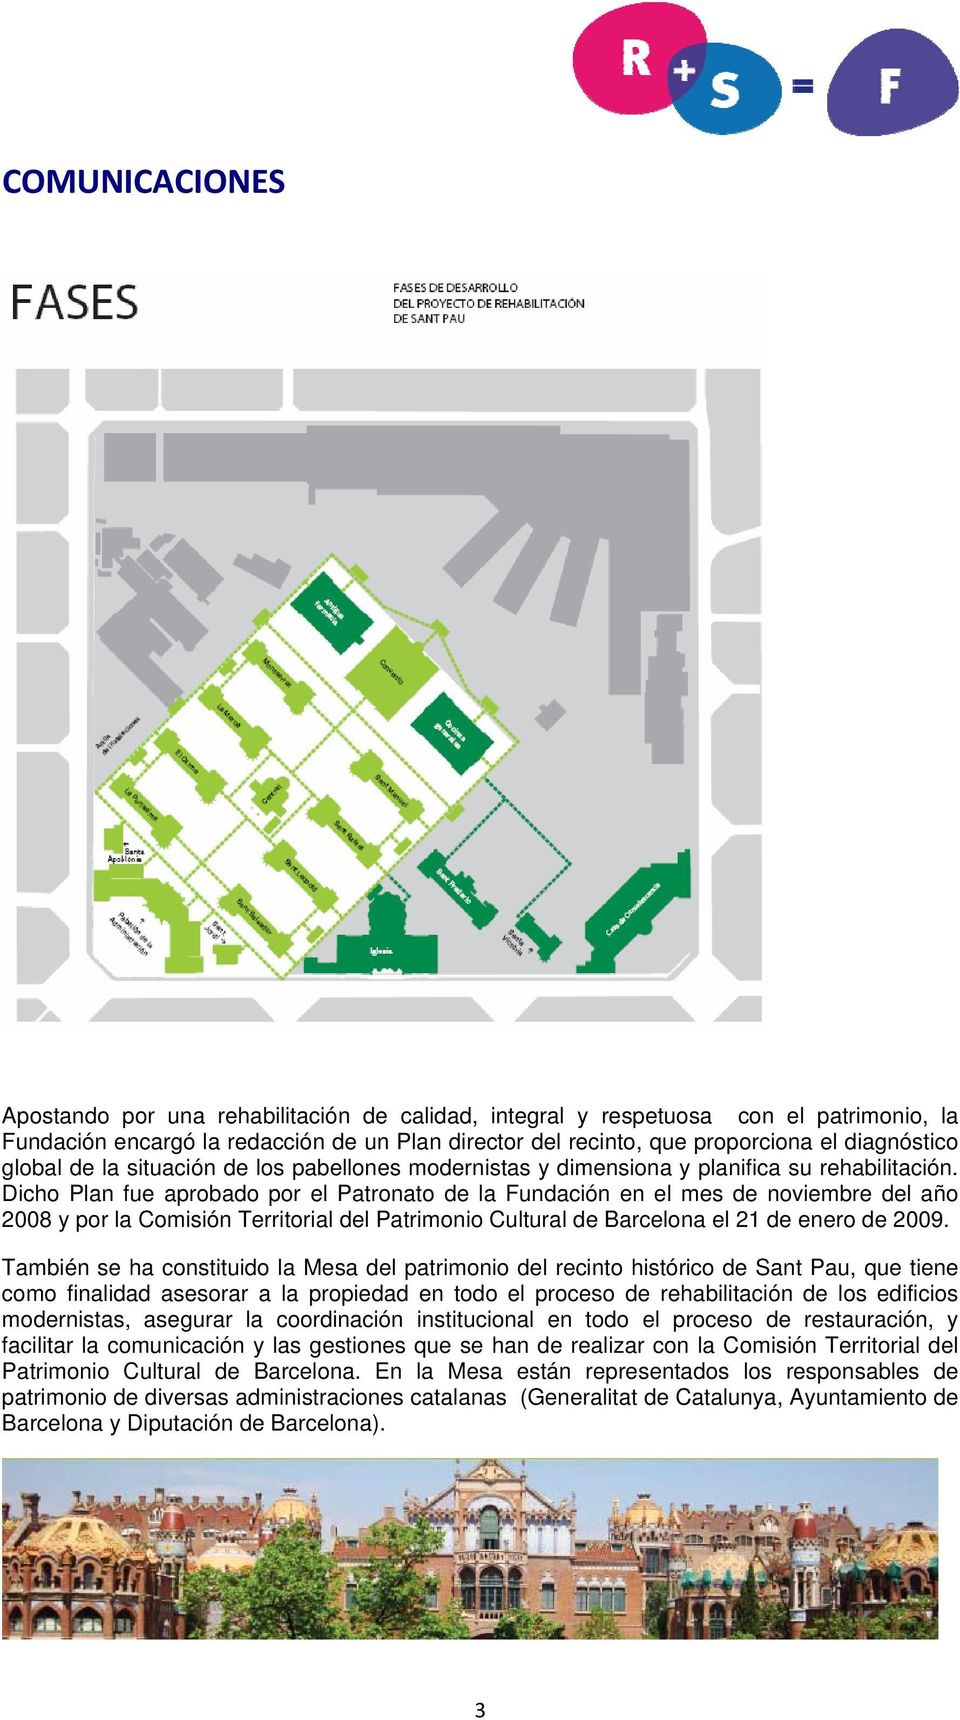 Dicho Plan fue aprobado por el Patronato de la Fundación en el mes de noviembre del año 2008 y por la Comisión Territorial del Patrimonio Cultural de Barcelona el 21 de enero de 2009.